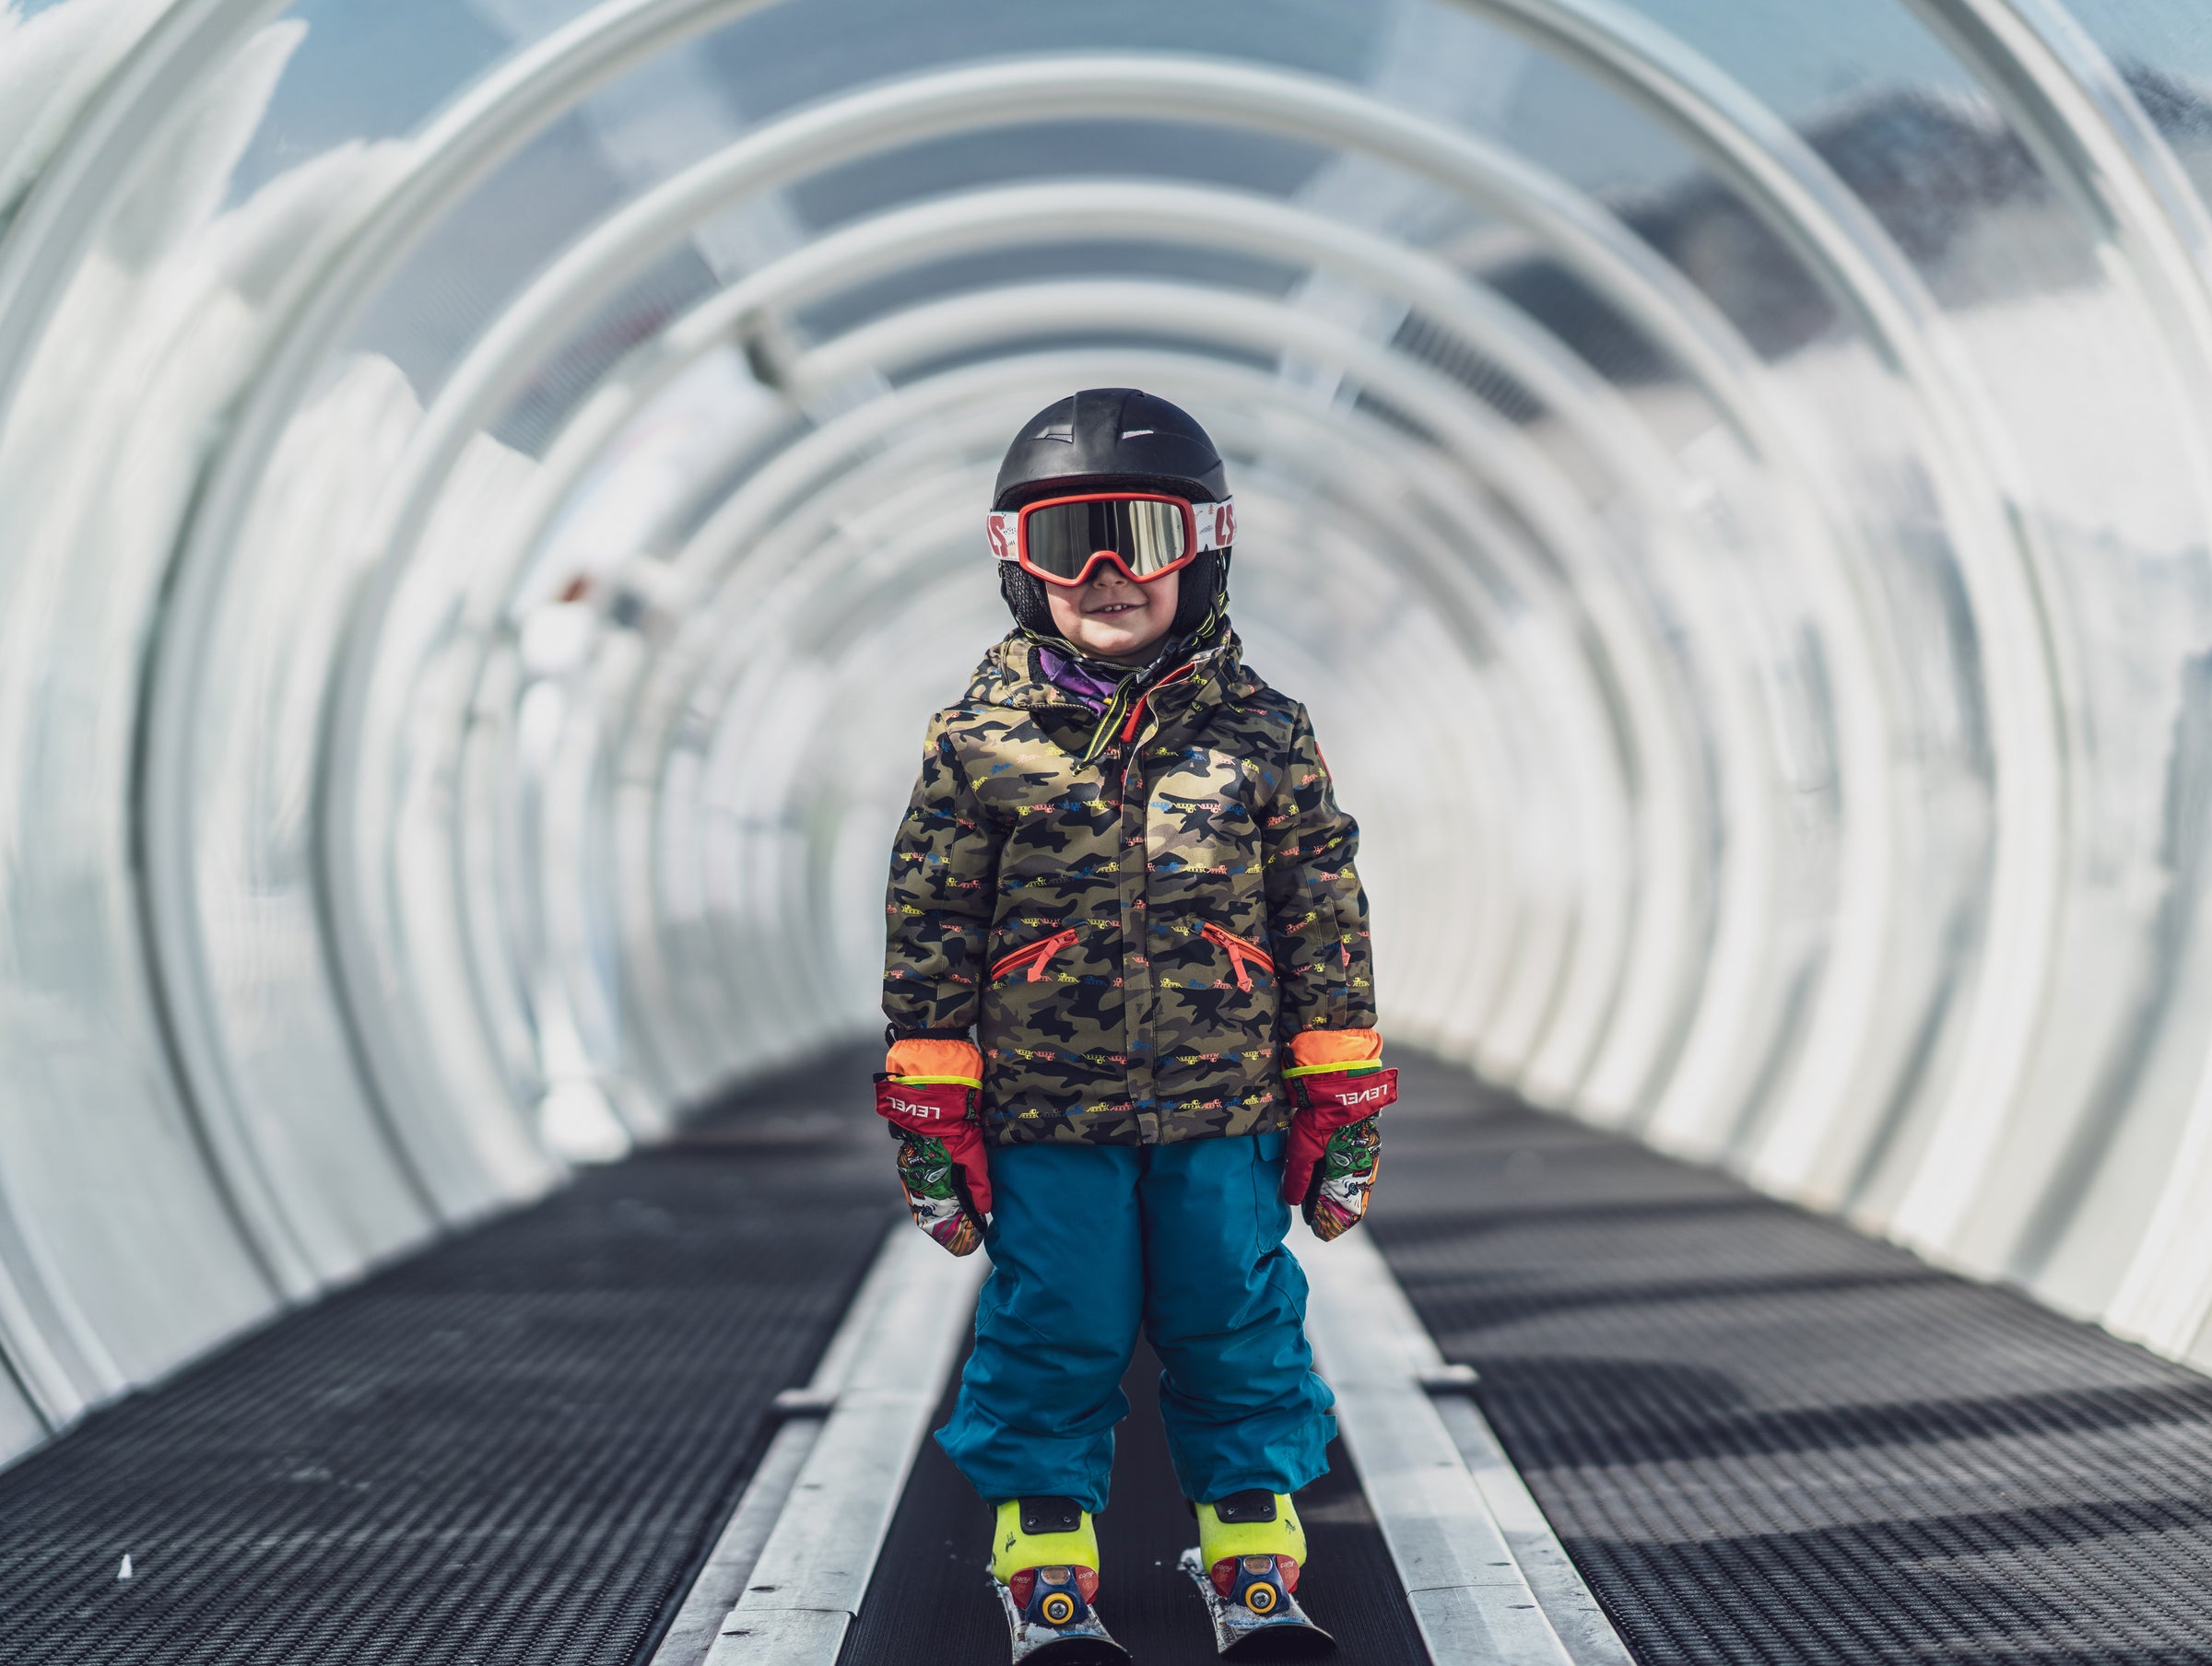 Loubsol Masque de ski enfant CRAZY (5-10 ans) - Pop turquoise